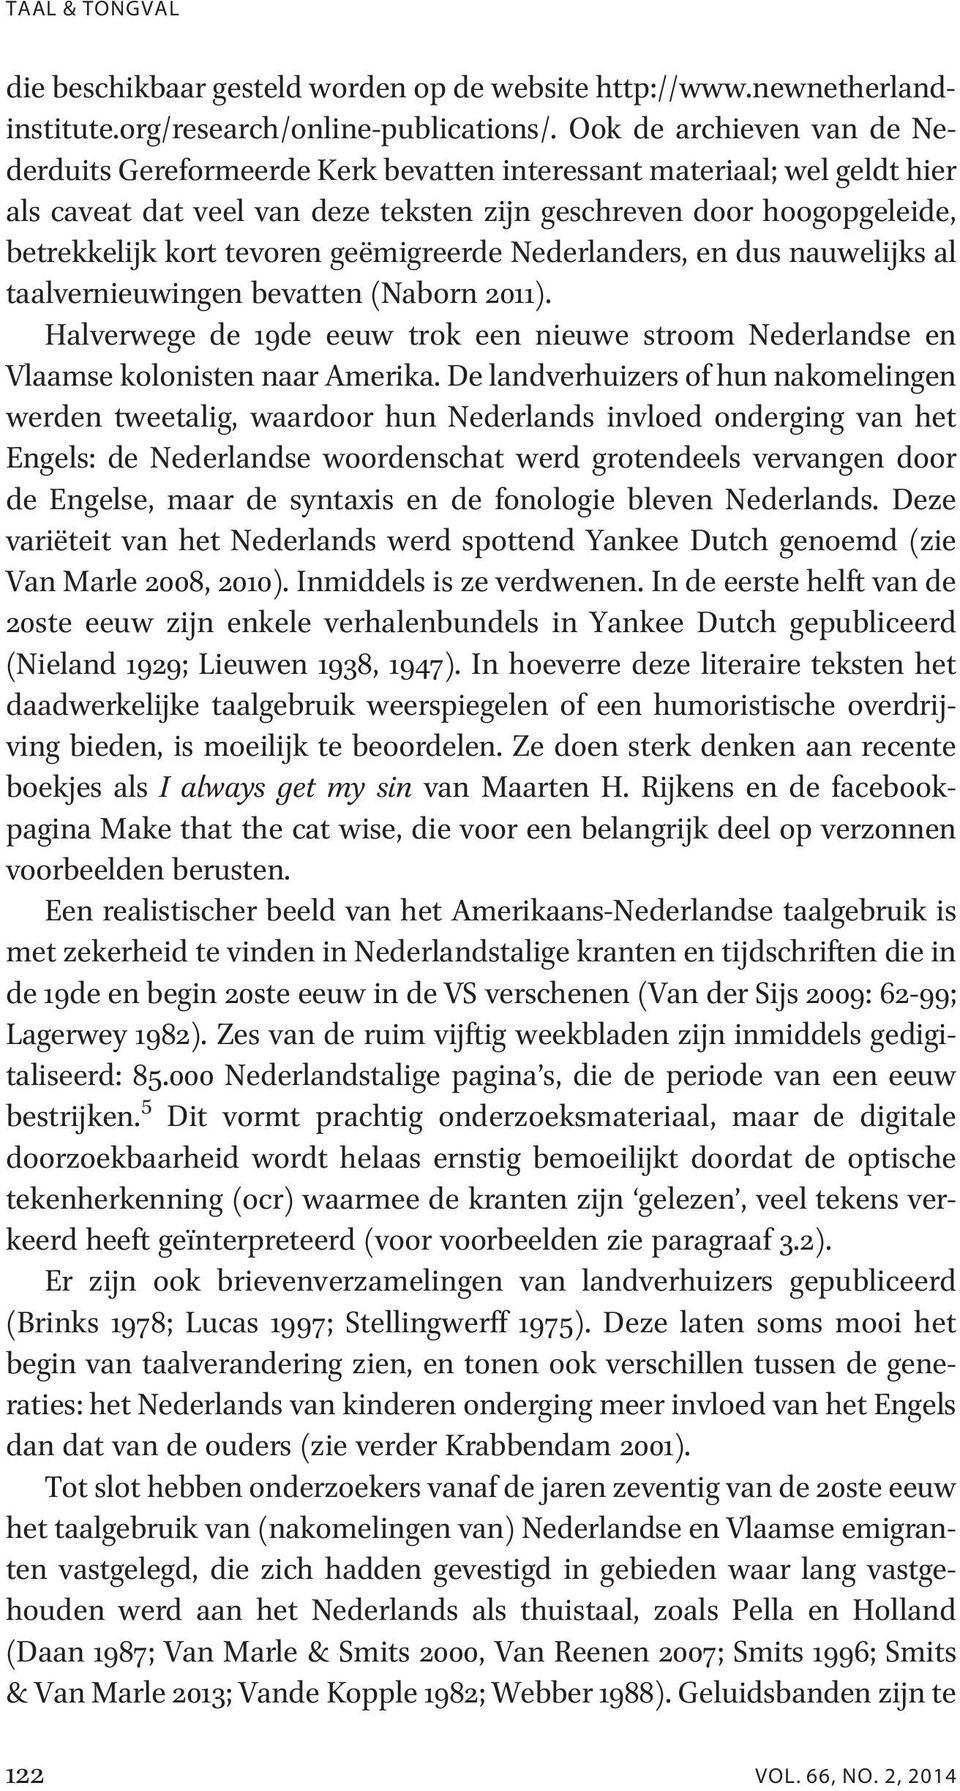 geëmigreerde Nederlanders, en dus nauwelijks al taalvernieuwingen bevatten (Naborn 2011). Halverwege de 19de eeuw trok een nieuwe stroom Nederlandse en Vlaamse kolonisten naar Amerika.